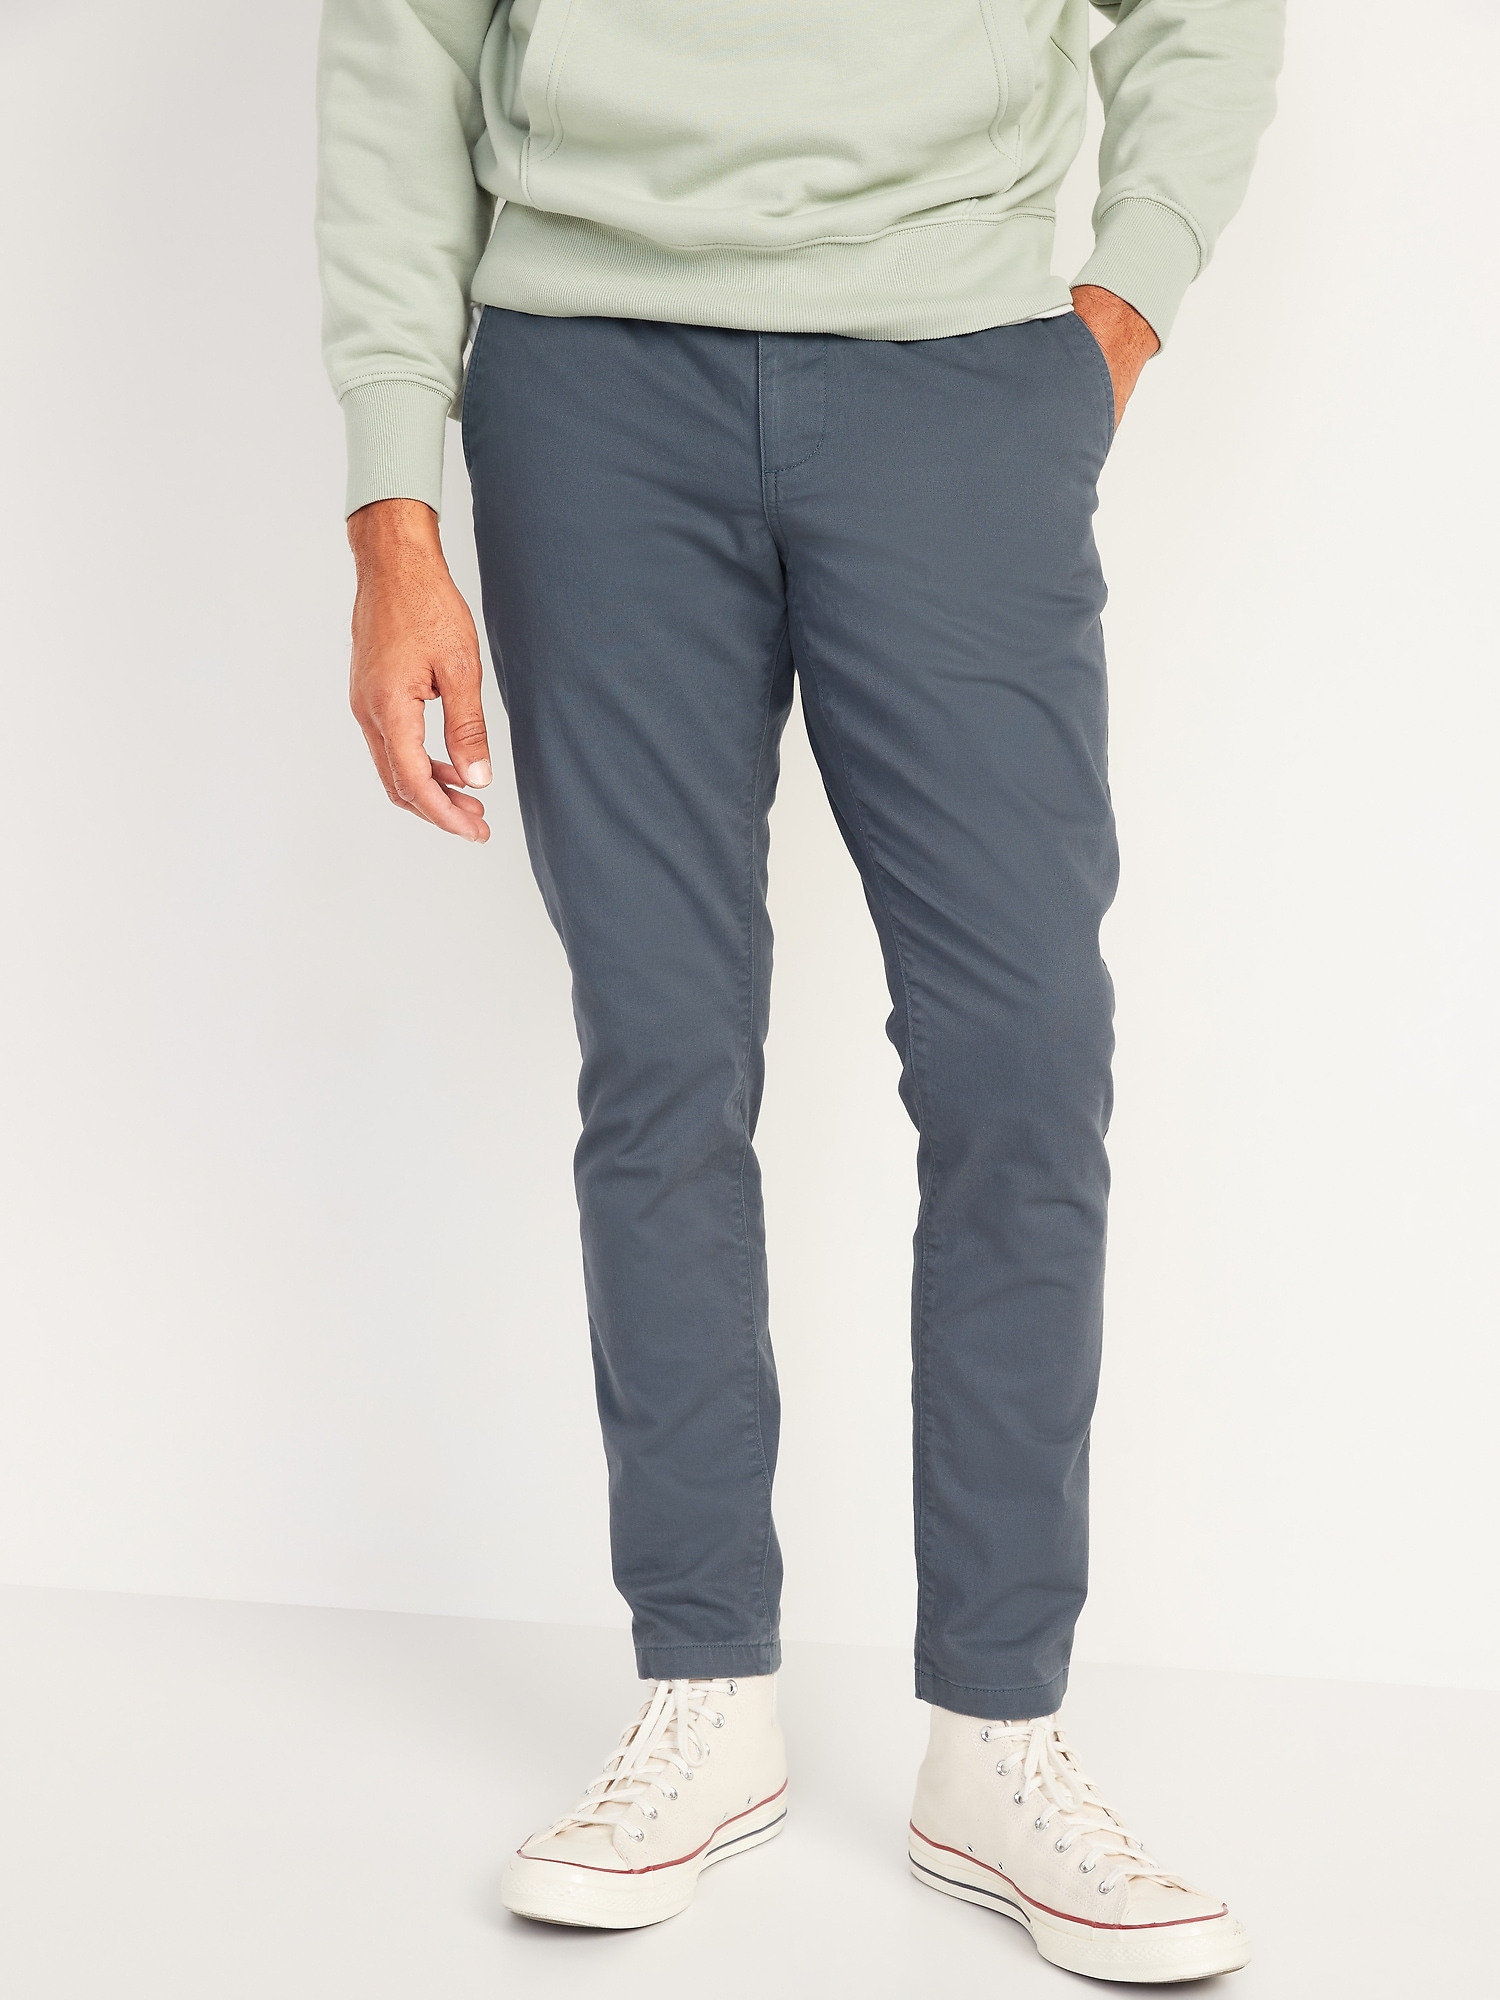 Slim Taper Built-In Flex OGC Chino Pull-On Pants for Men | Old Navy